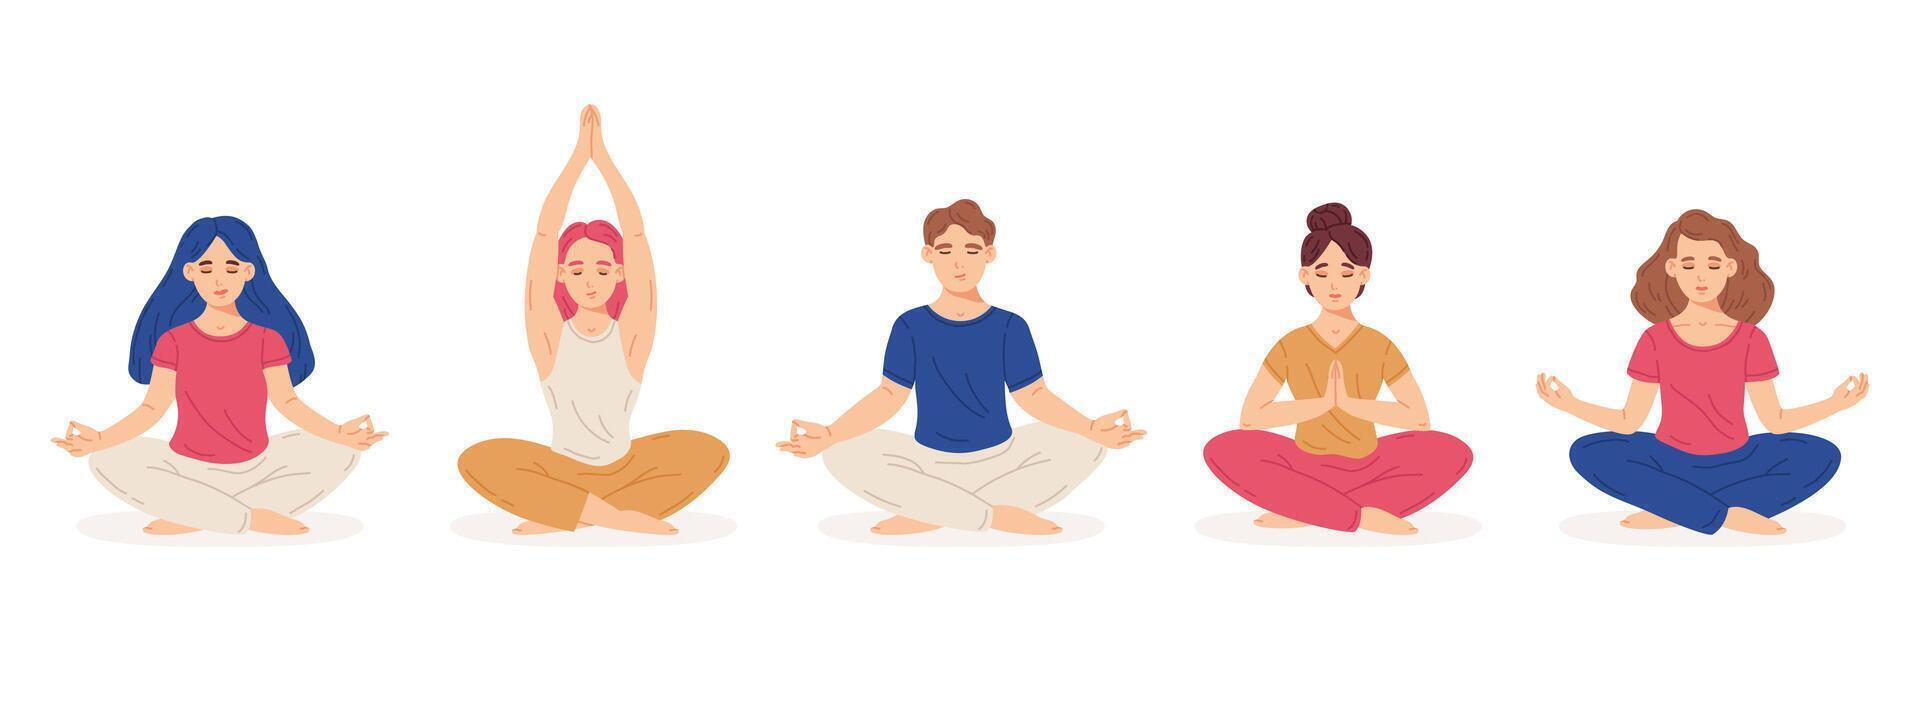 méditer personnes. femelle et Masculin personnages dans yoga lotus posture, méditation entraine toi concept dessin animé vecteur illustration ensemble. plat esprit et émotions harmonie gens